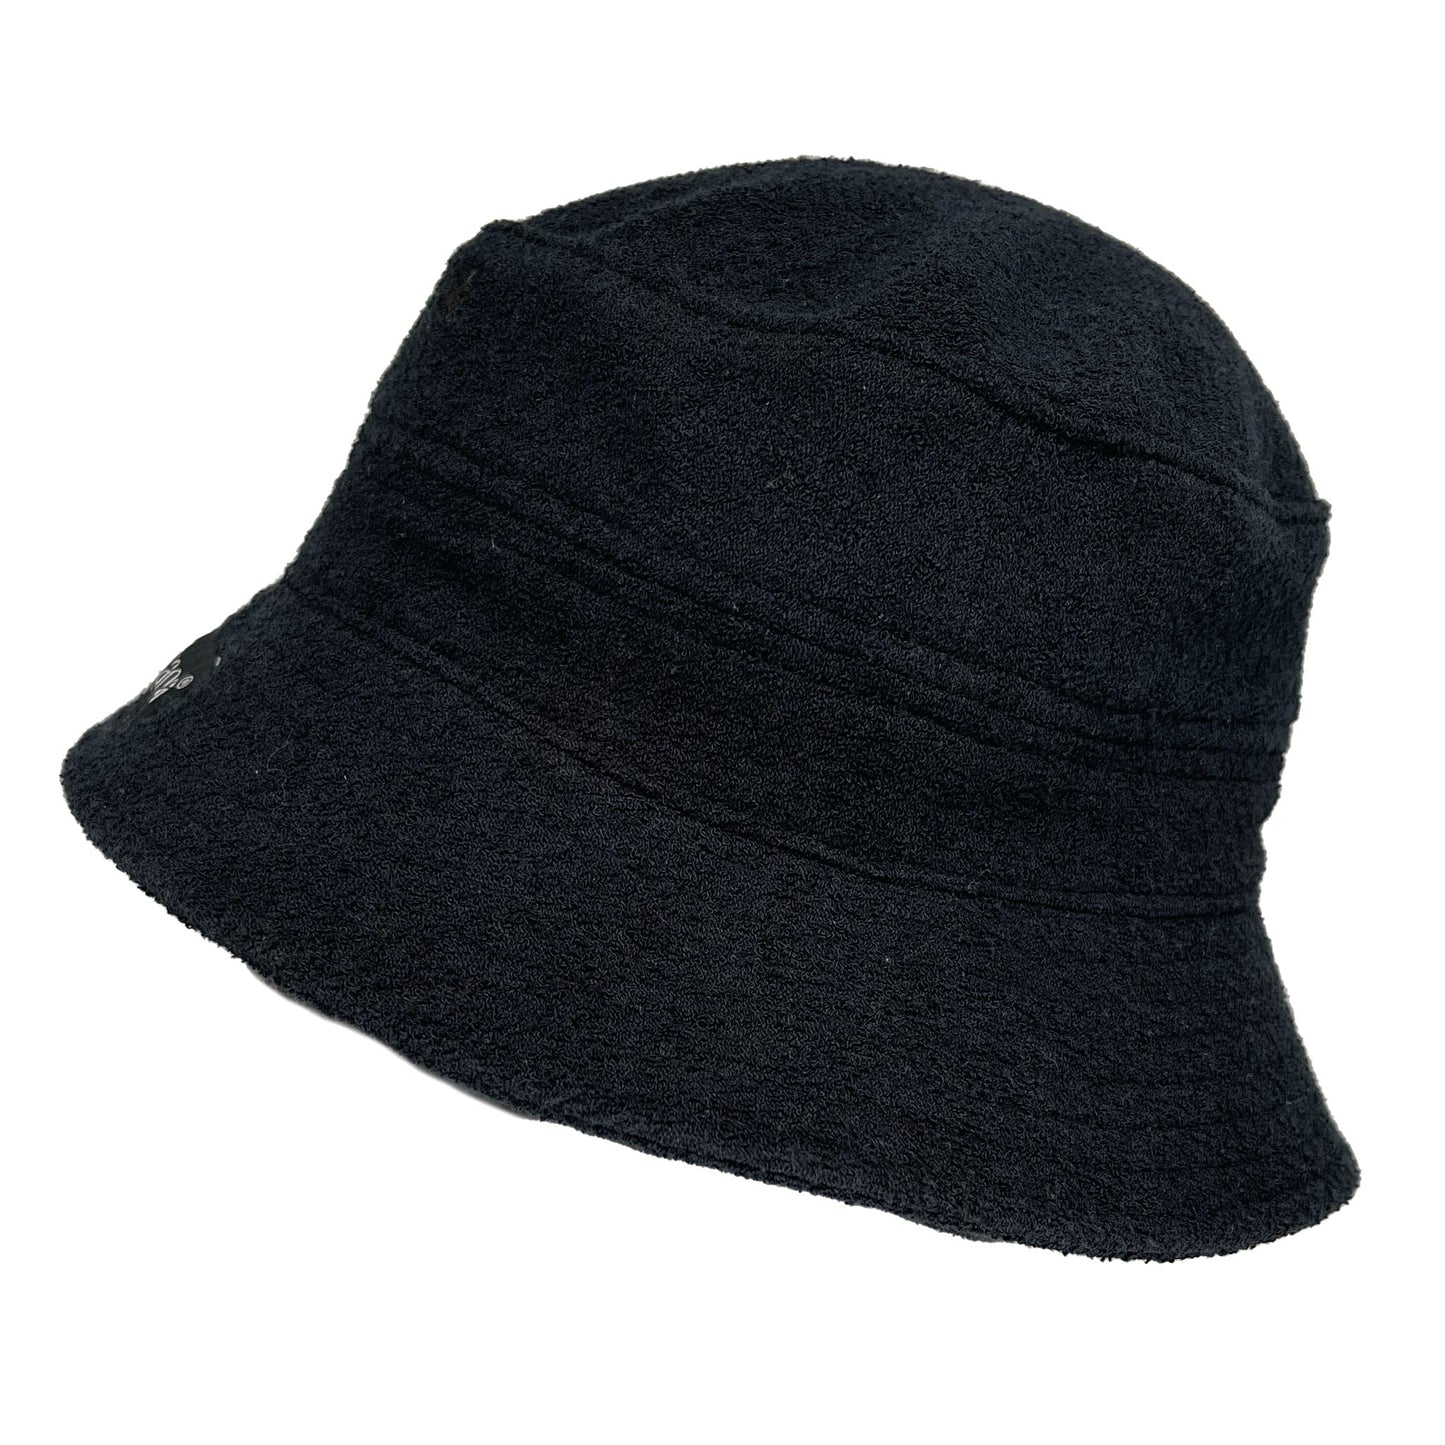 TOWEL BUCKET HAT